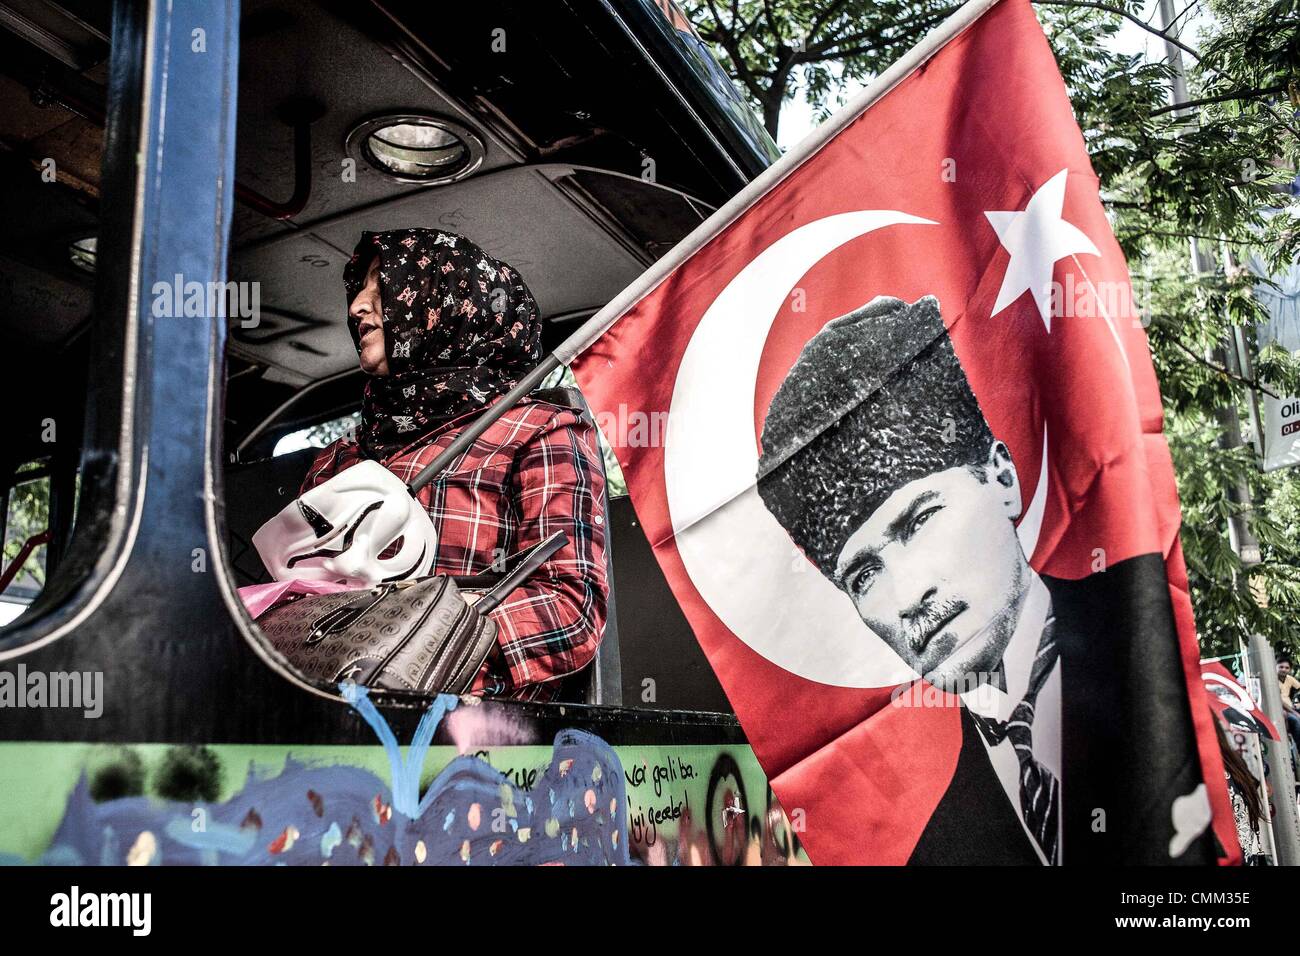 In gebrochenen Türkei statt Welle von Nostalgie für Gründervater - Text von Süddeutsche Zeitung - bei Gezi-Park Demonstranten Plakate von Kemal Atatürk mitten in einem Nebel von Tränengas, sie waren auf der Suche nach Stabilität in einer sich verändernden Welt. Reflexionen über 70 Jahren der türkischen Republik. -ISTANBUL - bei der Gründung der türkischen Republik-Präsident Kemal Atatürk Frau Latife vor 90 Jahren trafen sich den italienischen Botschafter anlässlich eines Empfangs in Ankara und fragte ihn über den Zustand des Feminismus in seinem Land. Stockfoto